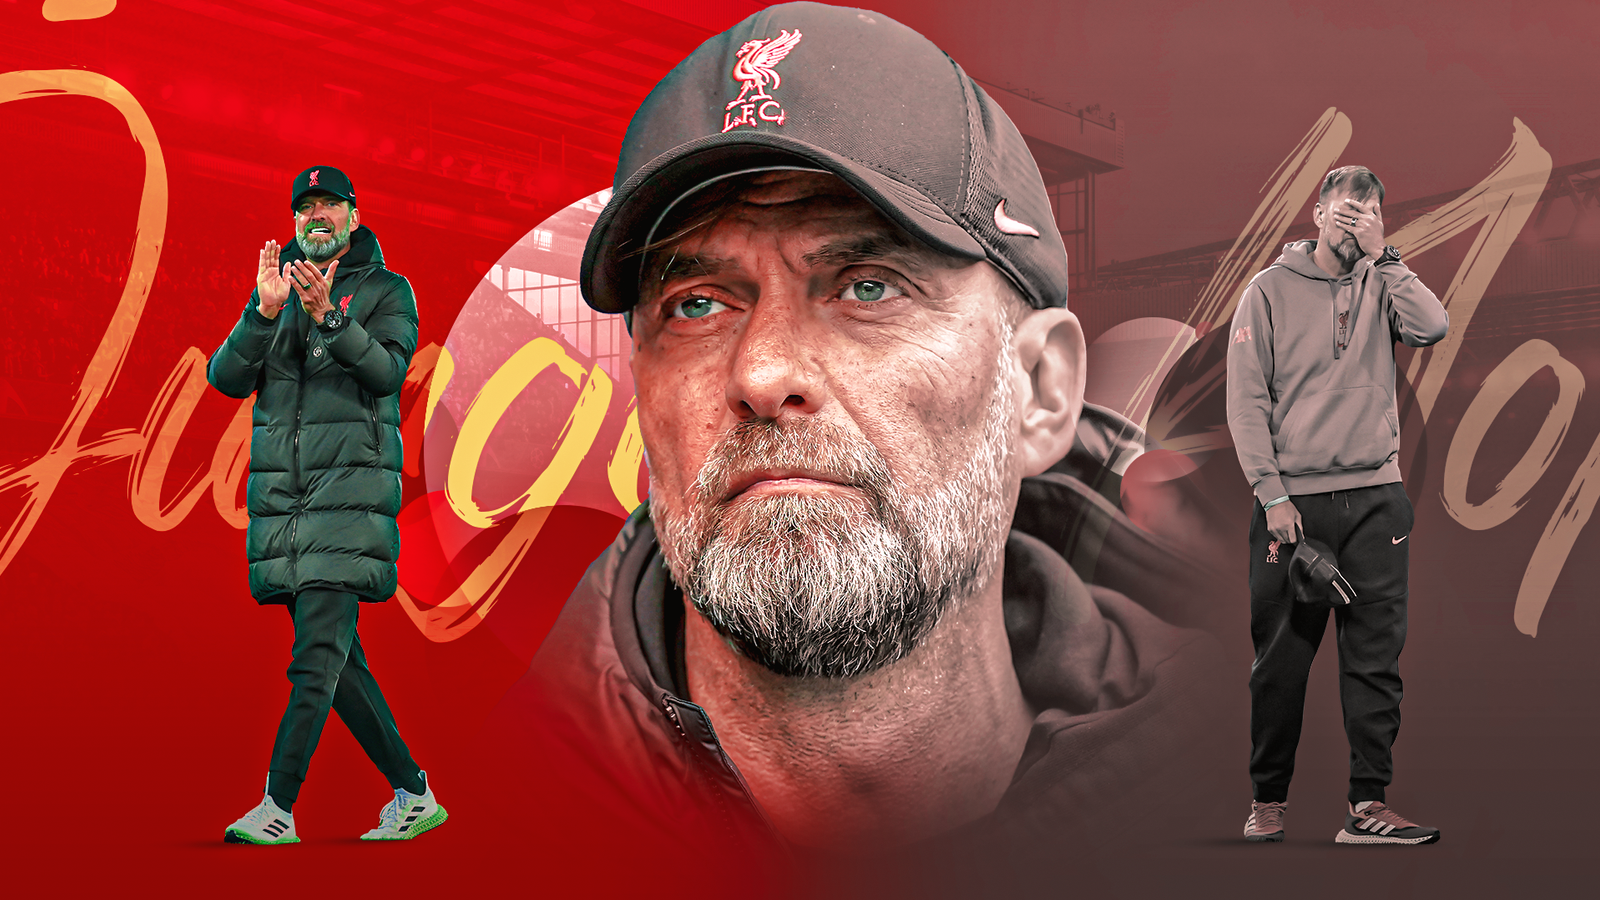 Exclusiva de Jurgen Klopp: entrenador del Liverpool en mala forma esta temporada, manteniéndose motivado, reclutamiento inteligente y más |  Noticias de futbol